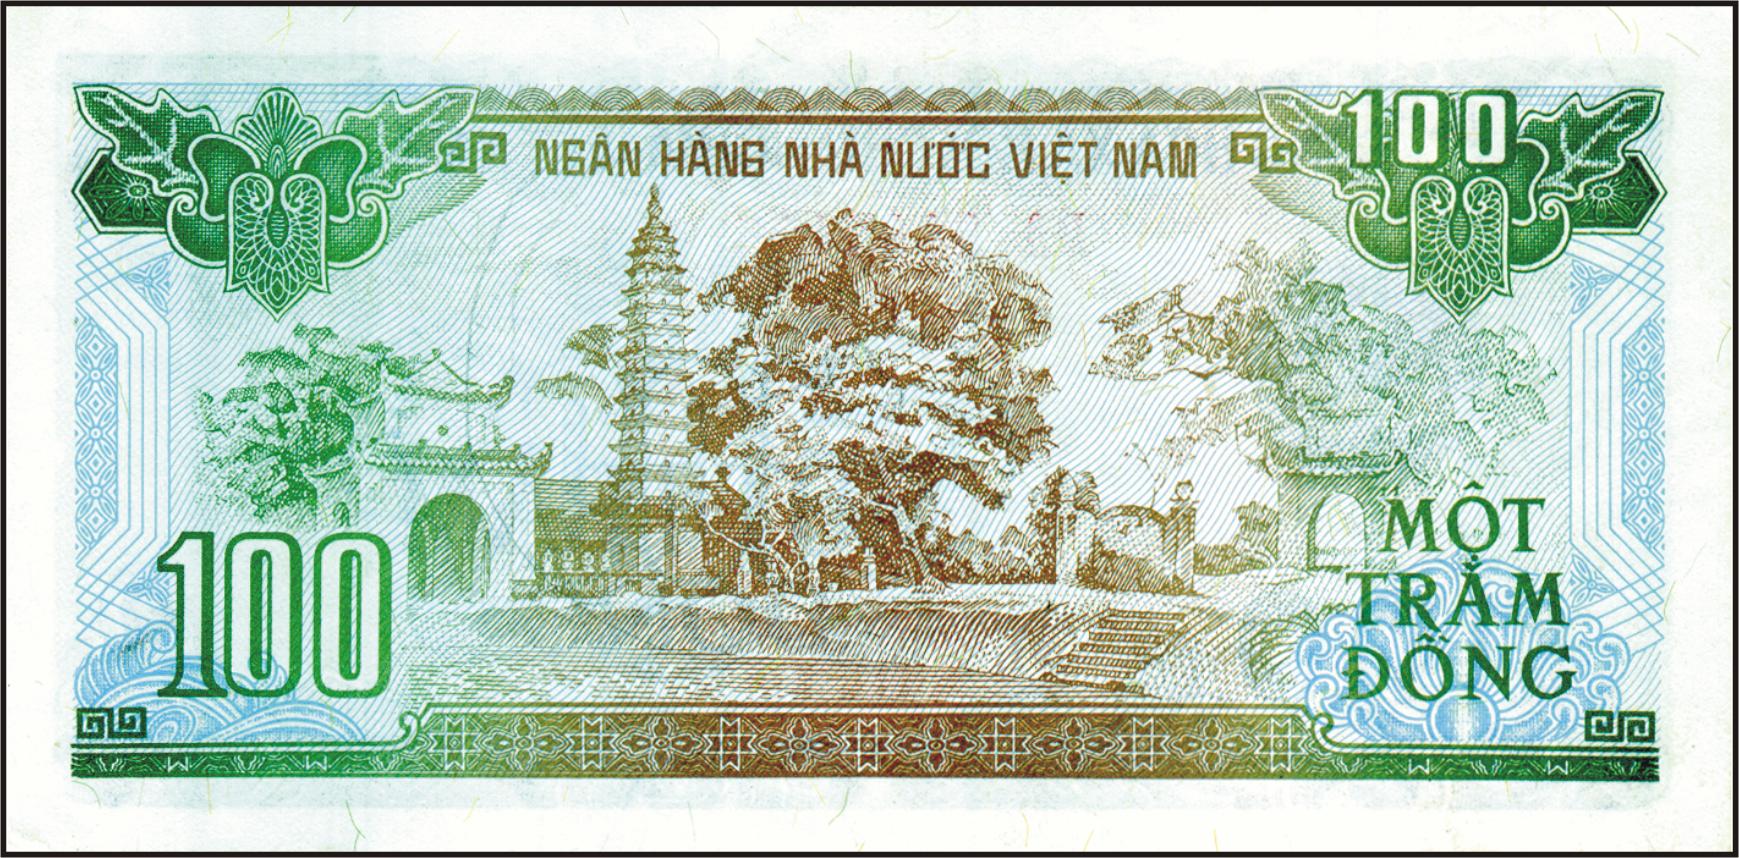 Tiền giấy giai đoạn 1990